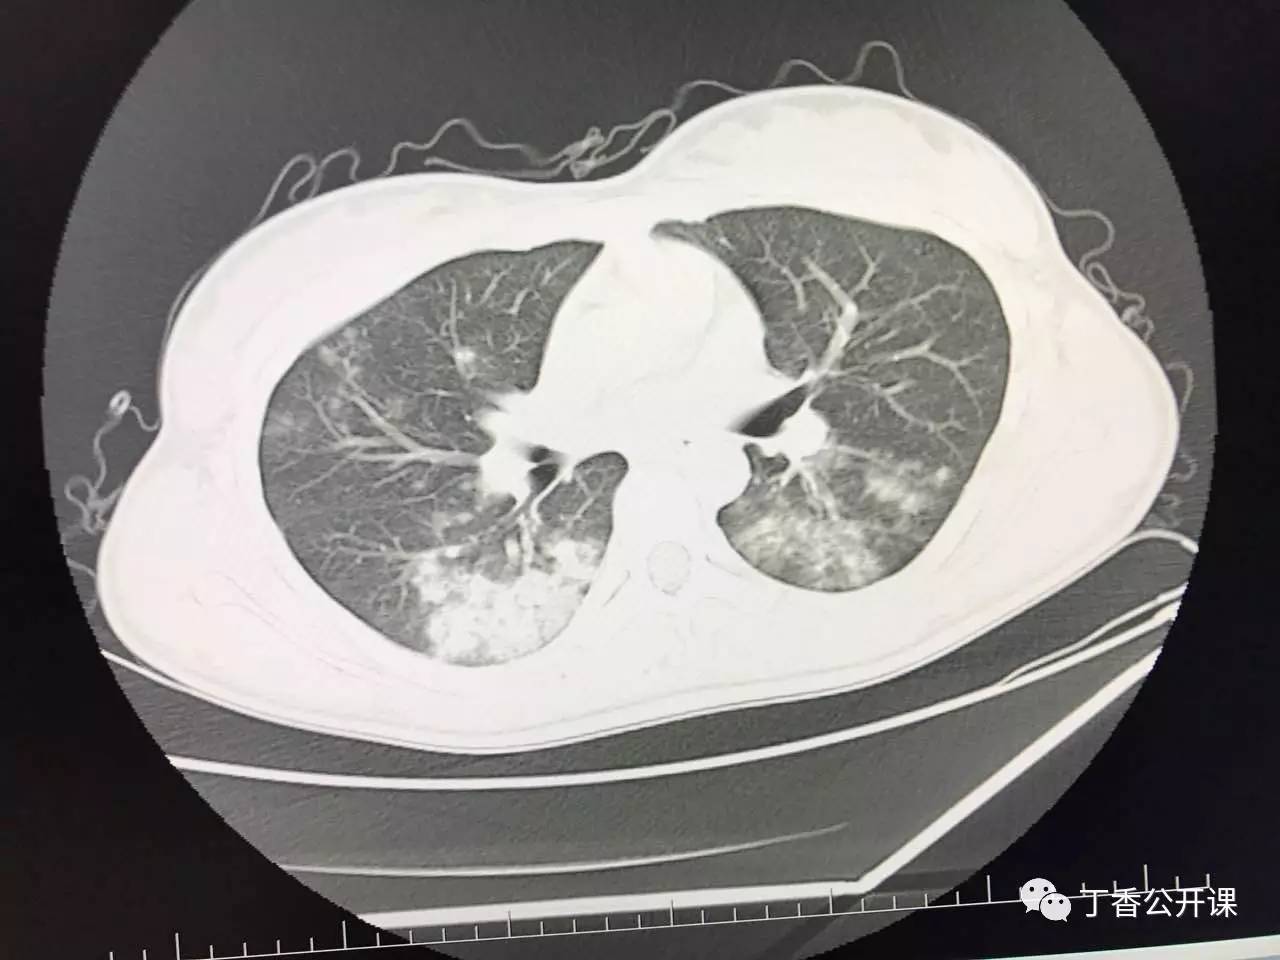 肺肿瘤CT图片-图库-五毛网